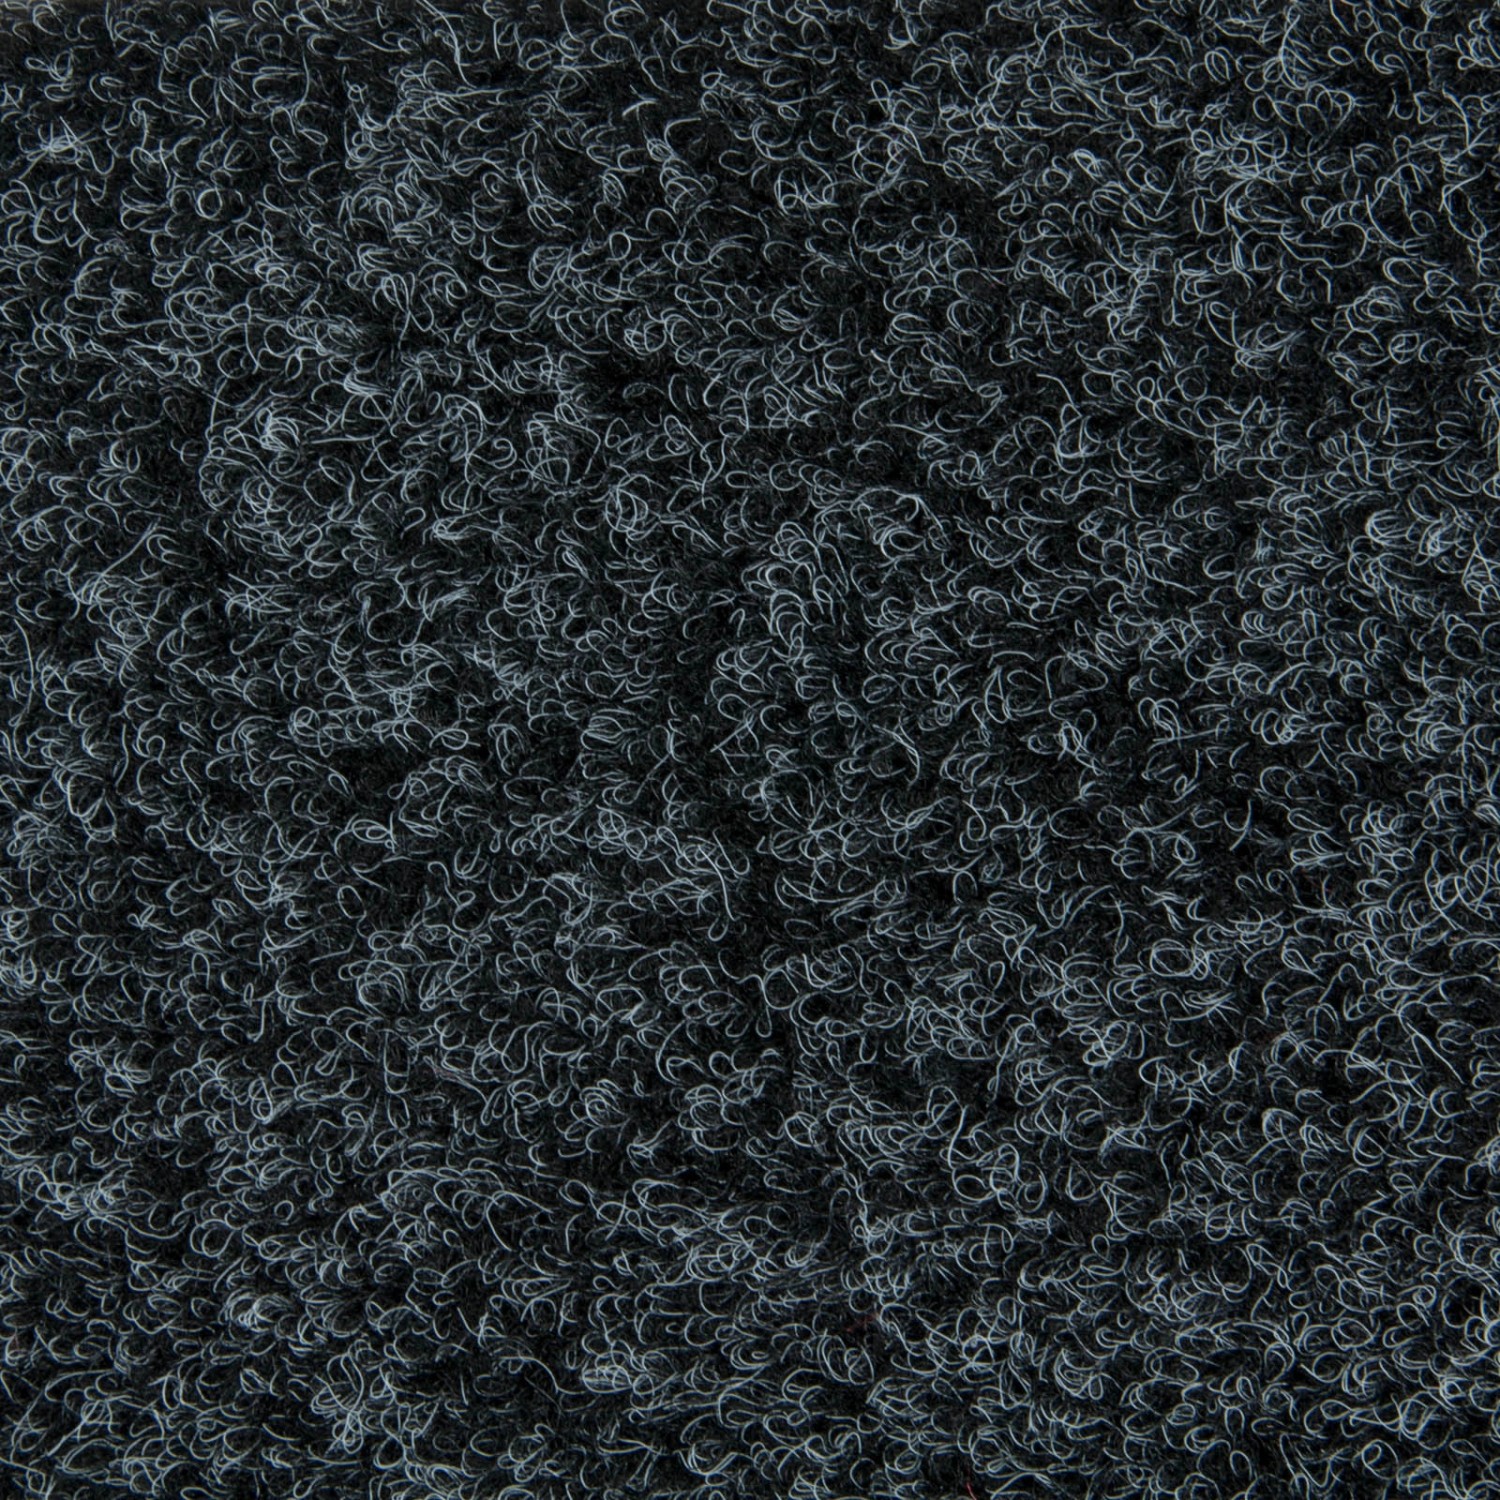 Schatex Teppichboden Fliesen Selbstliegend Nadelvlies Teppichfliesen Grau Ideal Für Messe Und Büro Nadelfilz Teppich Fli